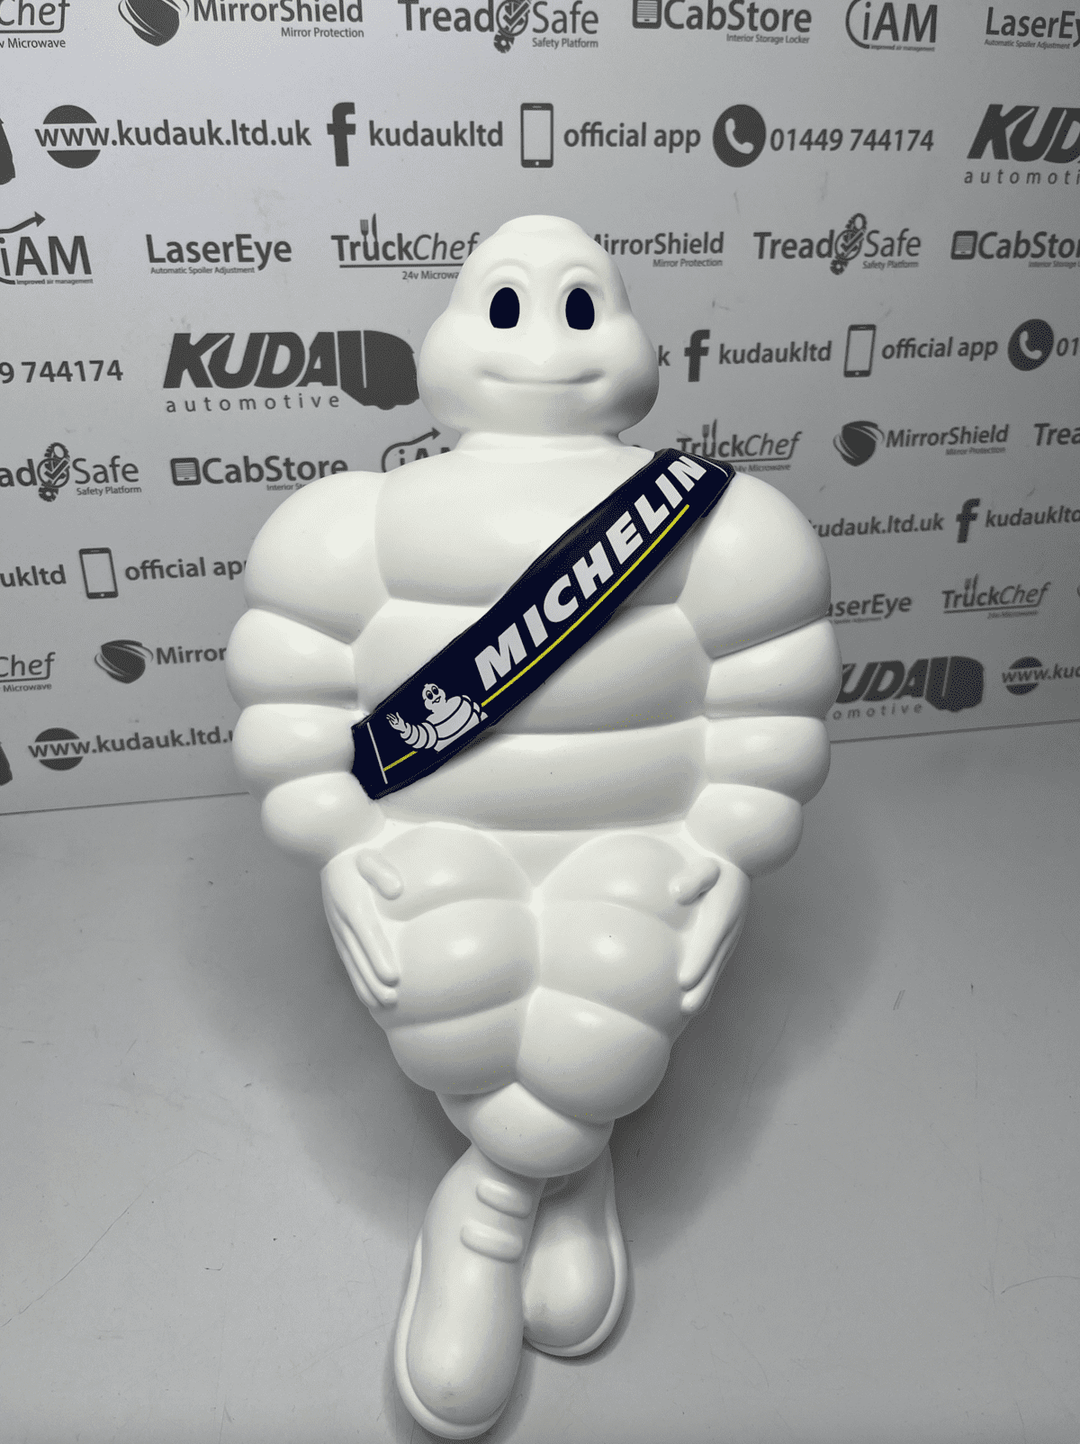 Michelin Man Mascot Pair